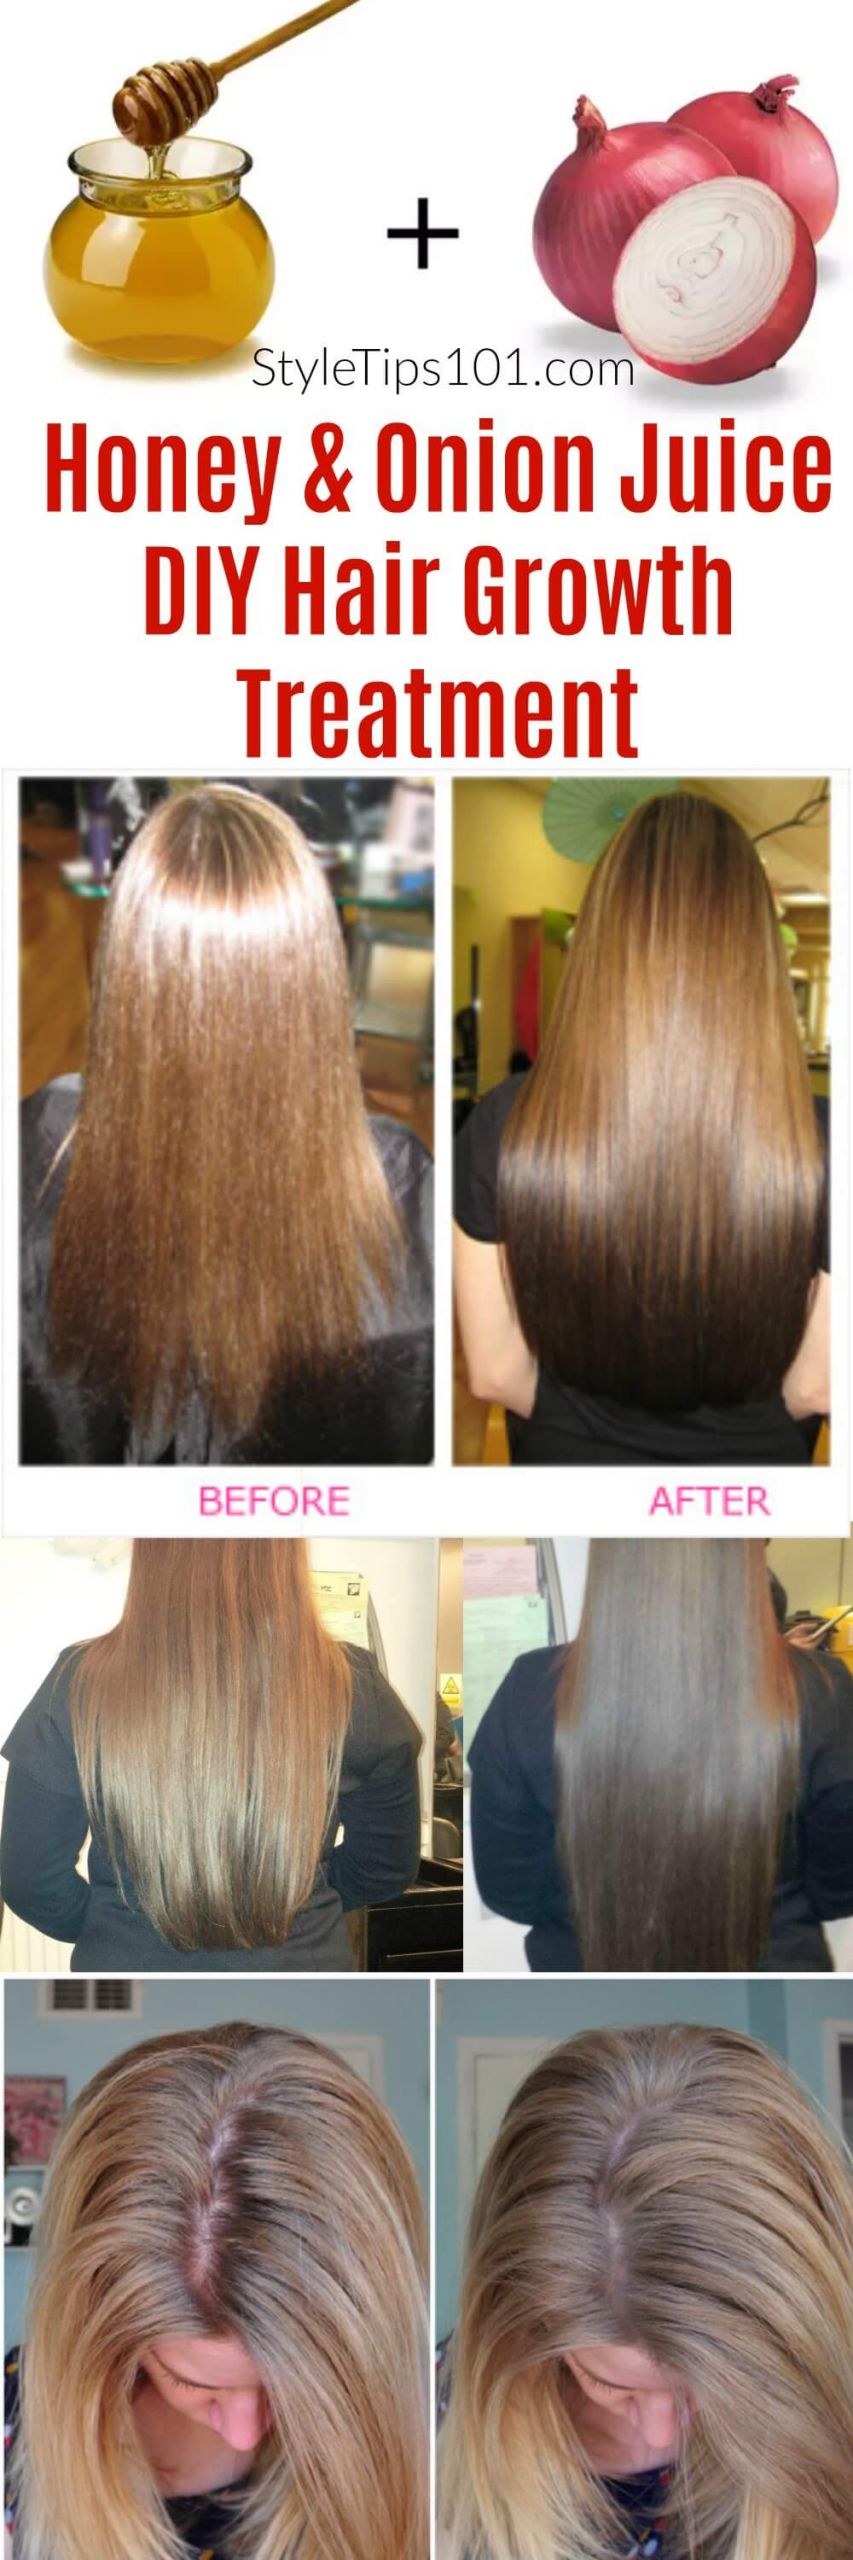 DIY Hair Loss Treatments
 ion Juice & Honey DIY Hair Growth Treatment